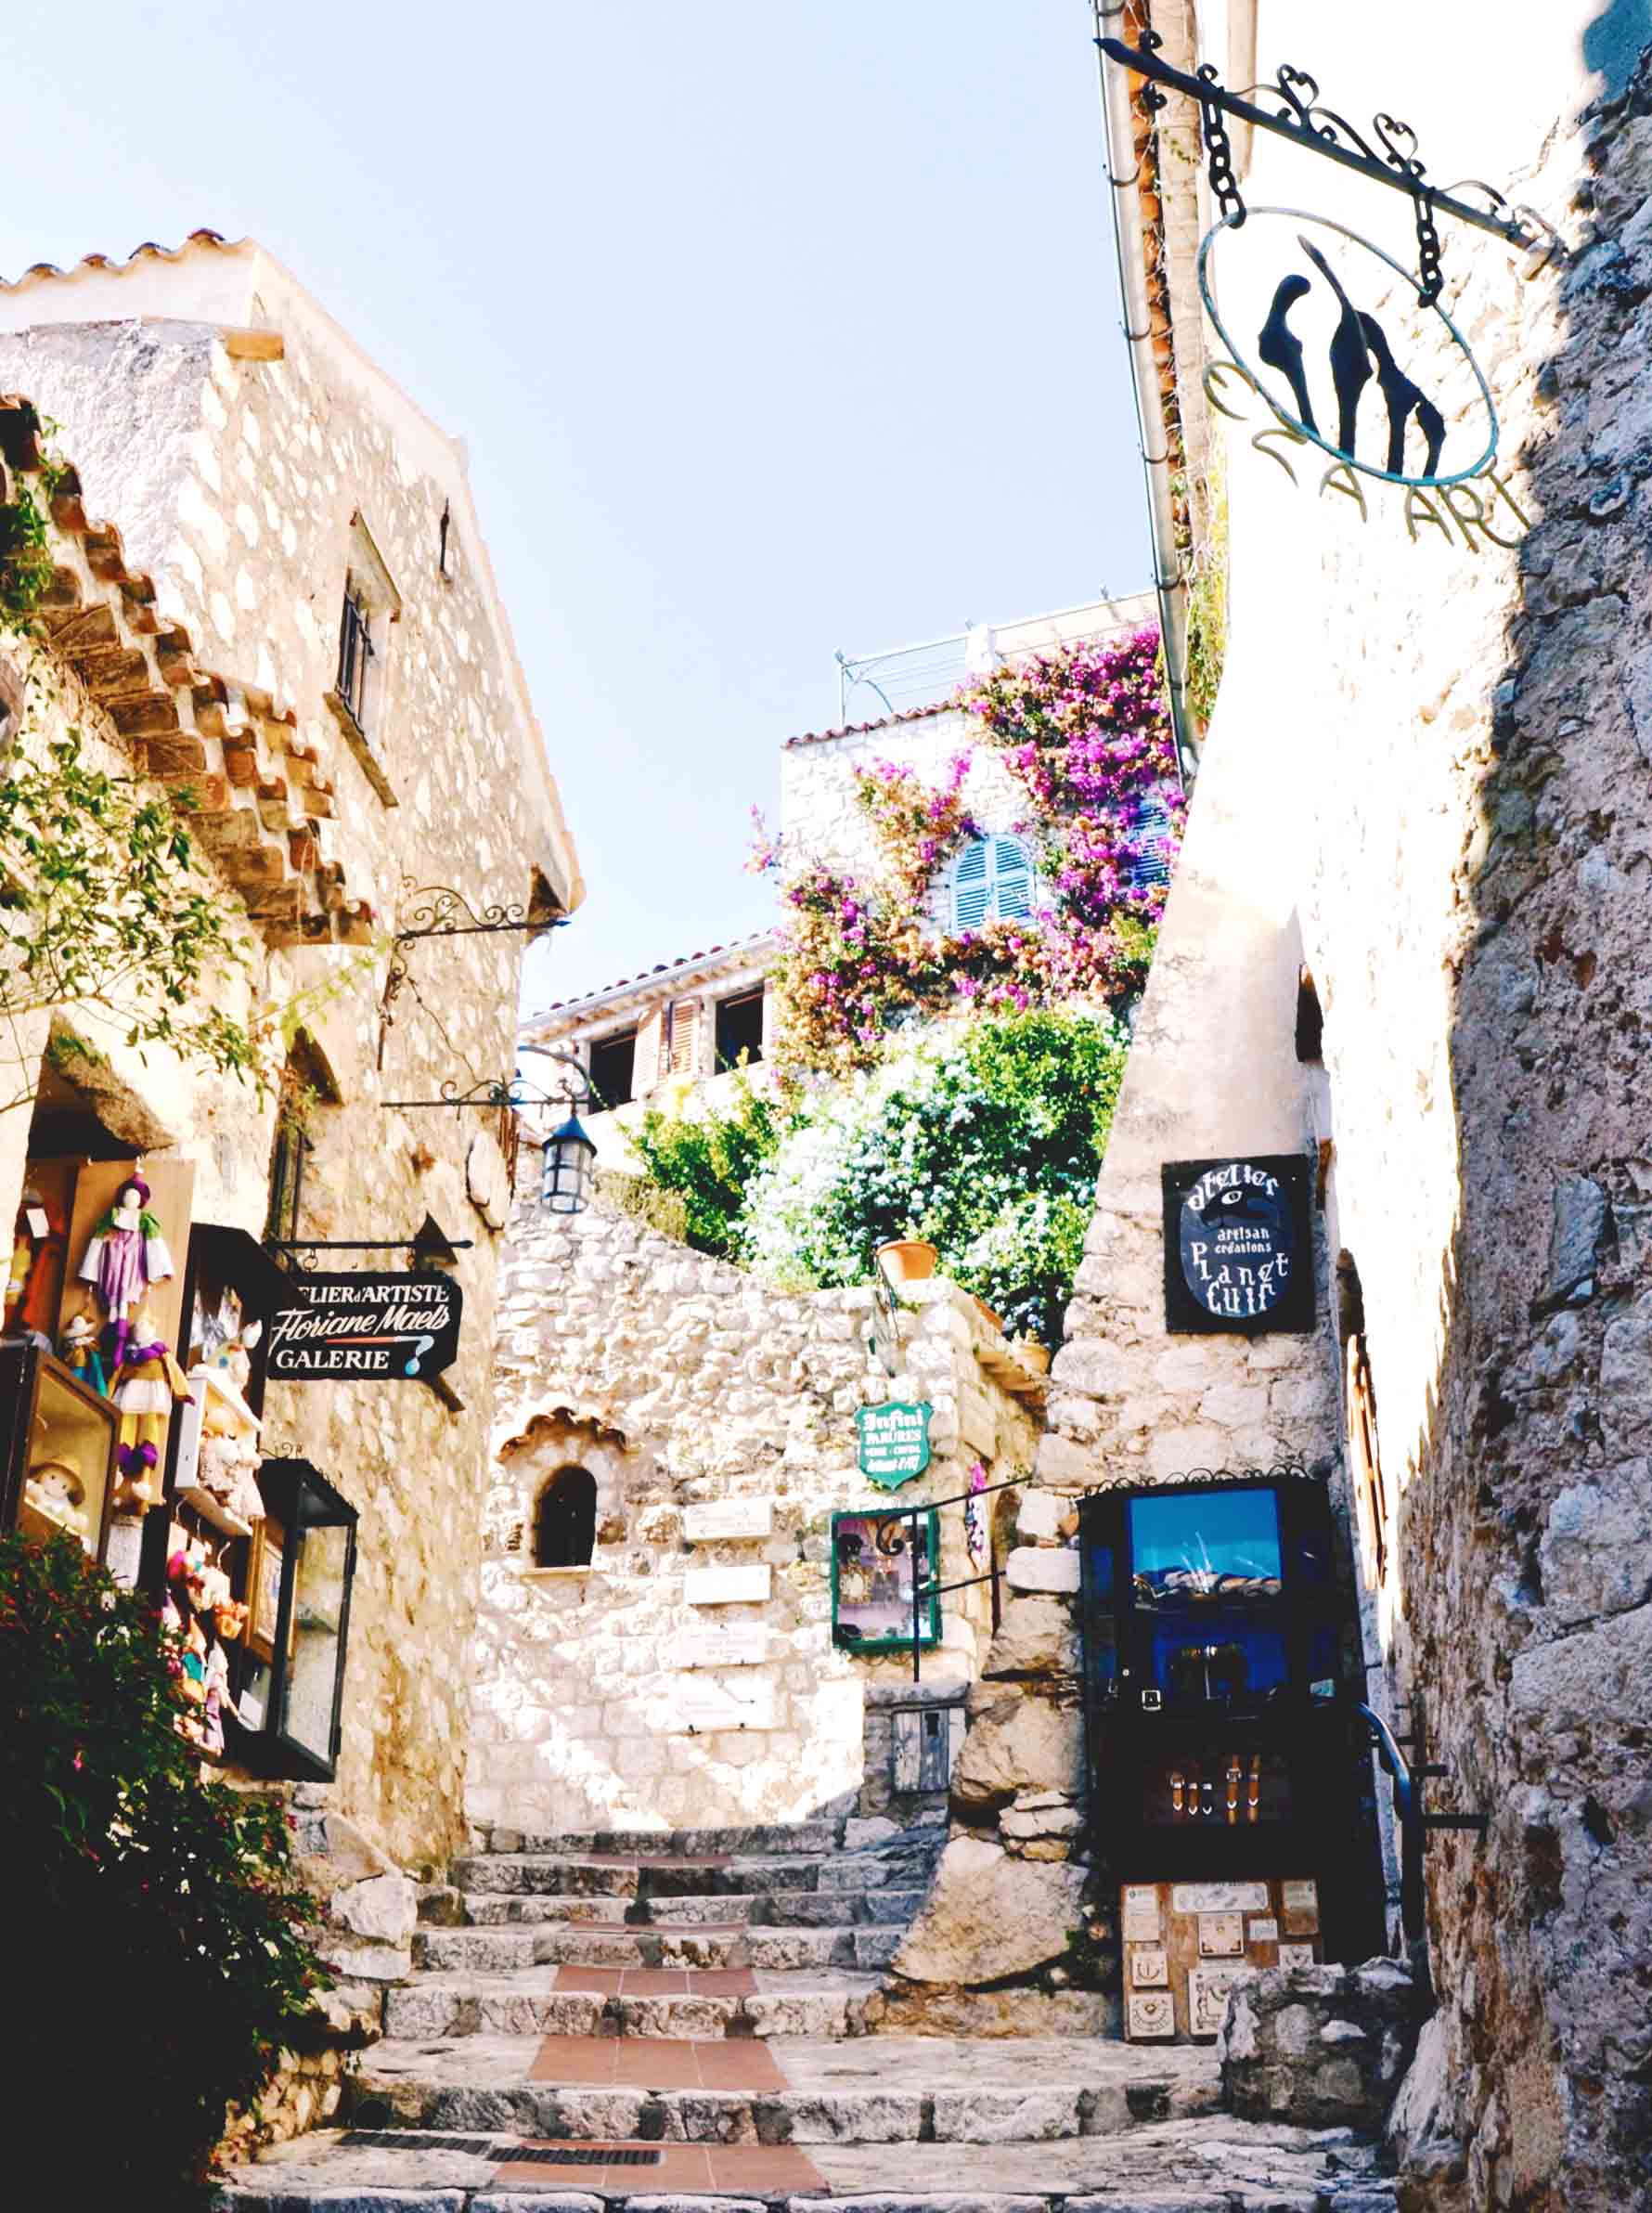 Arquitetura provençal da vila medieval de Èze Village no sul da França, artesanato, flores e restaurantes